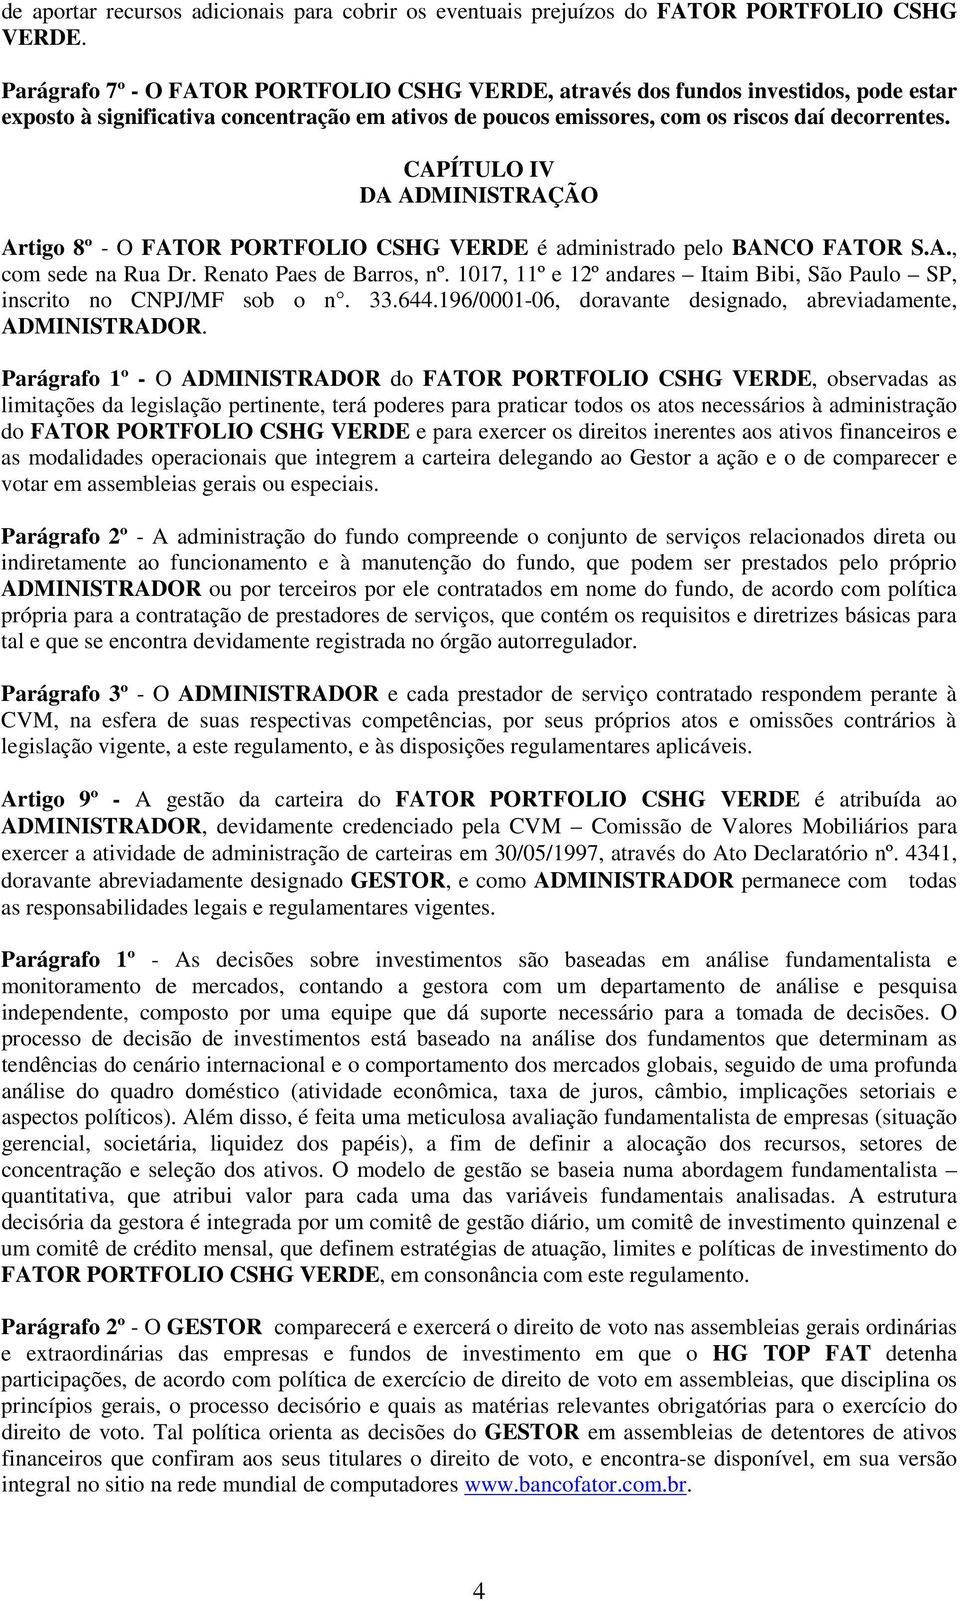 CAPÍTULO IV DA ADMINISTRAÇÃO Artigo 8º - O FATOR PORTFOLIO CSHG VERDE é administrado pelo BANCO FATOR S.A., com sede na Rua Dr. Renato Paes de Barros, nº.